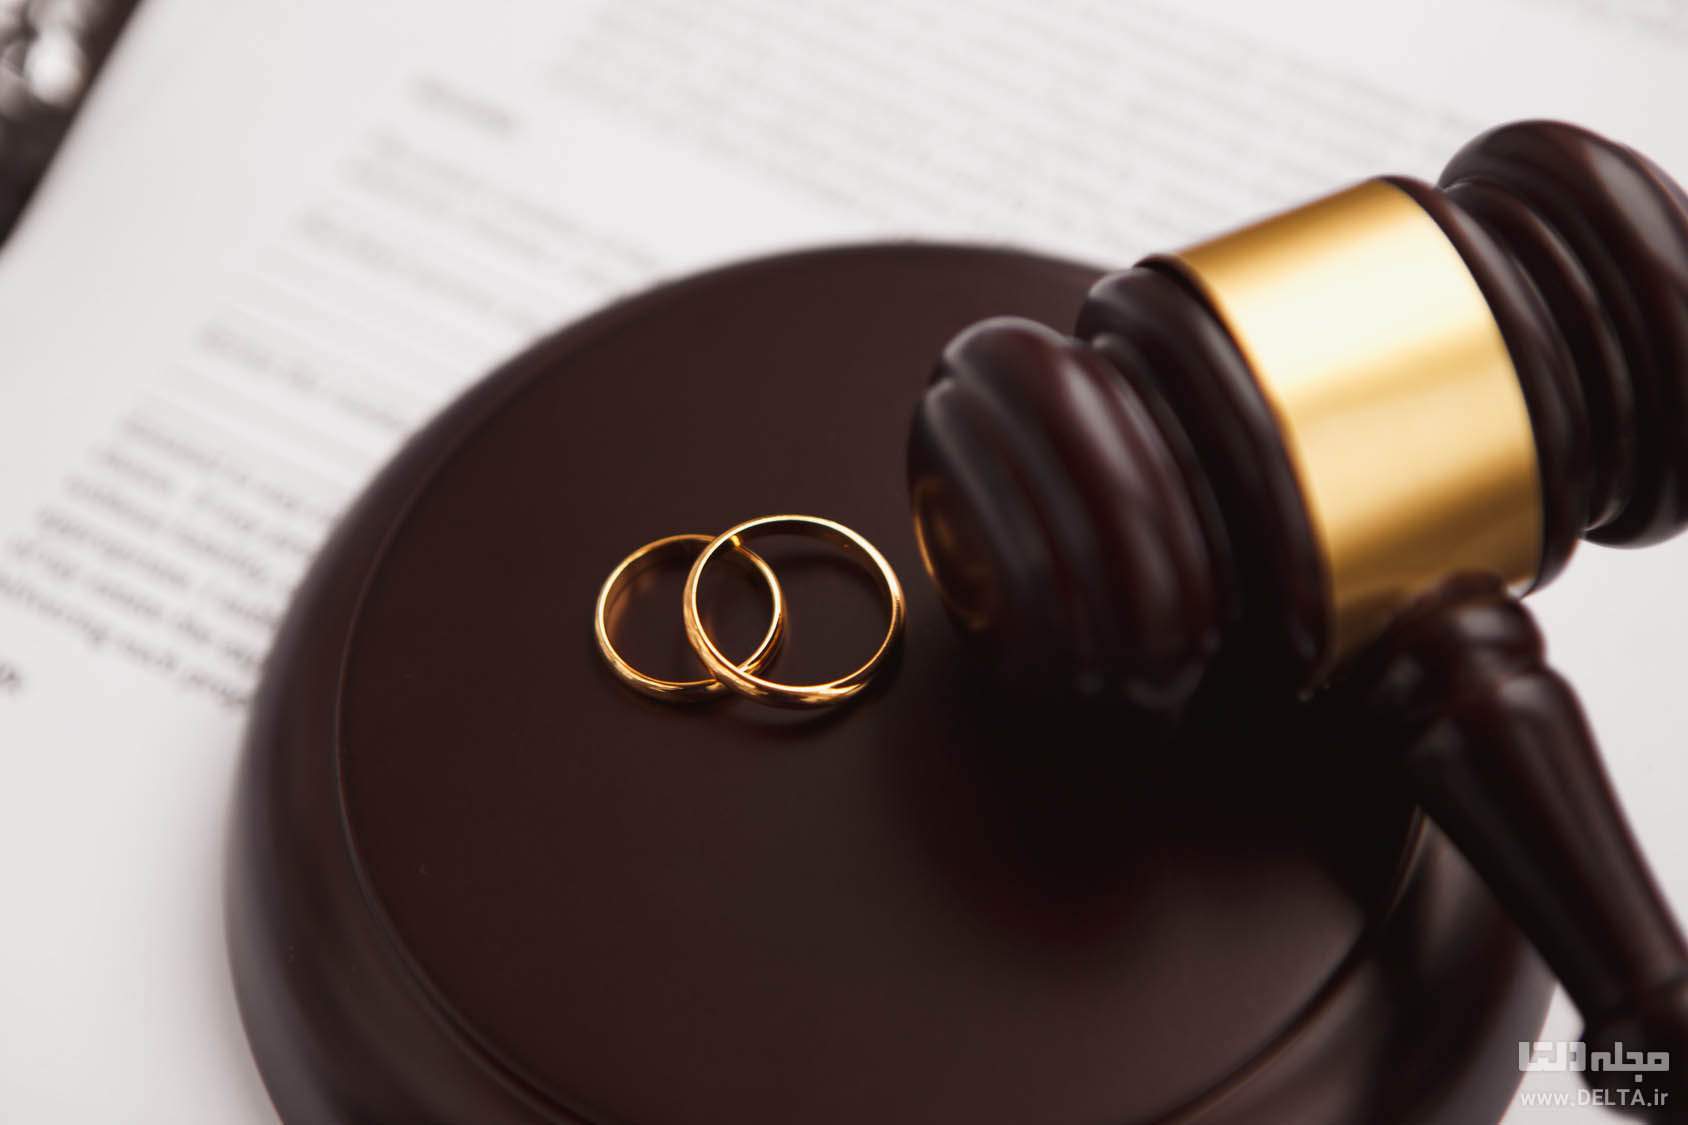 شرایط داور در طلاق